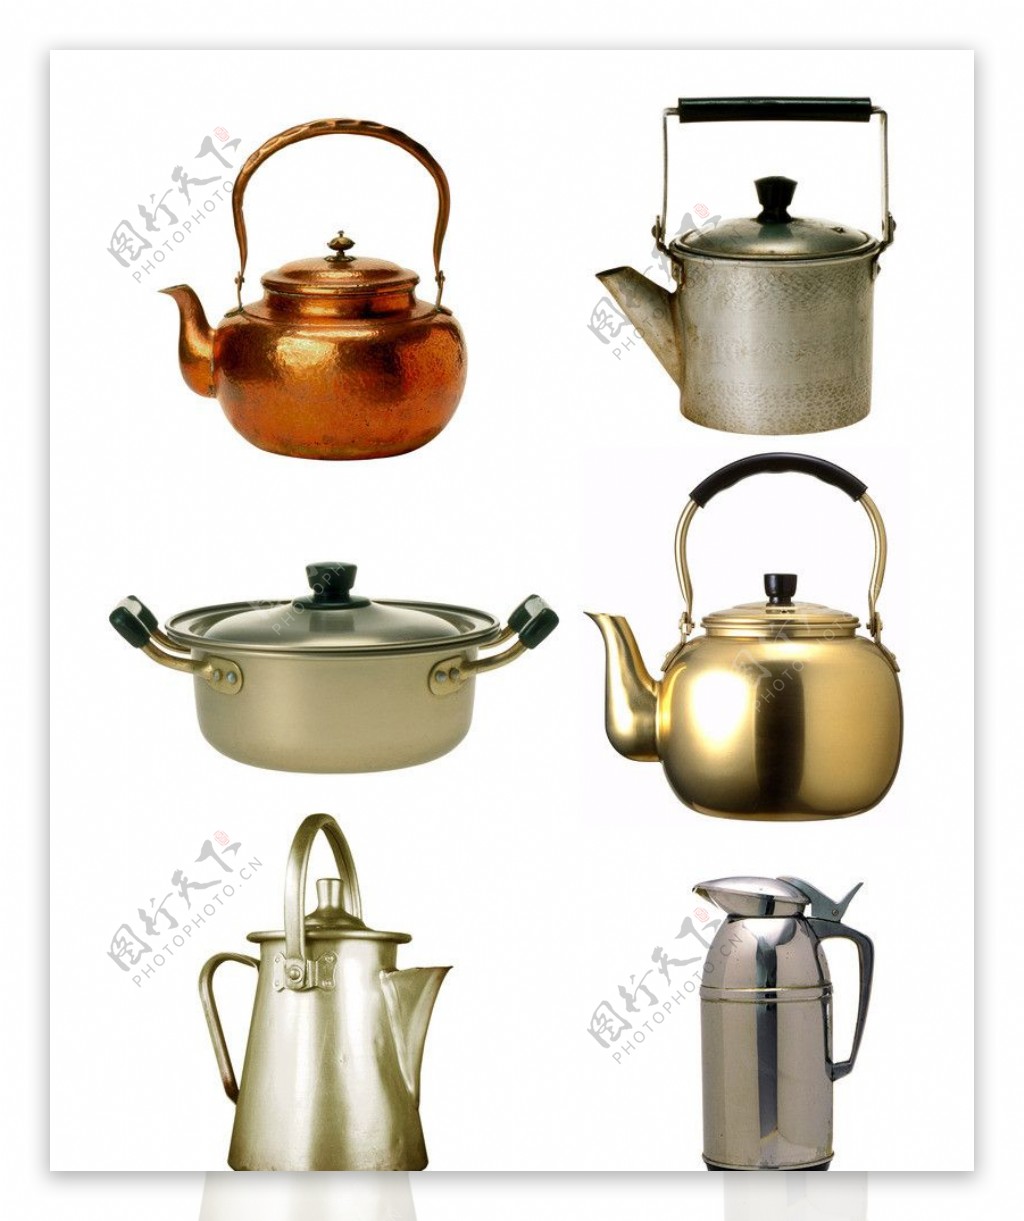 铝制水壶茶壶图片